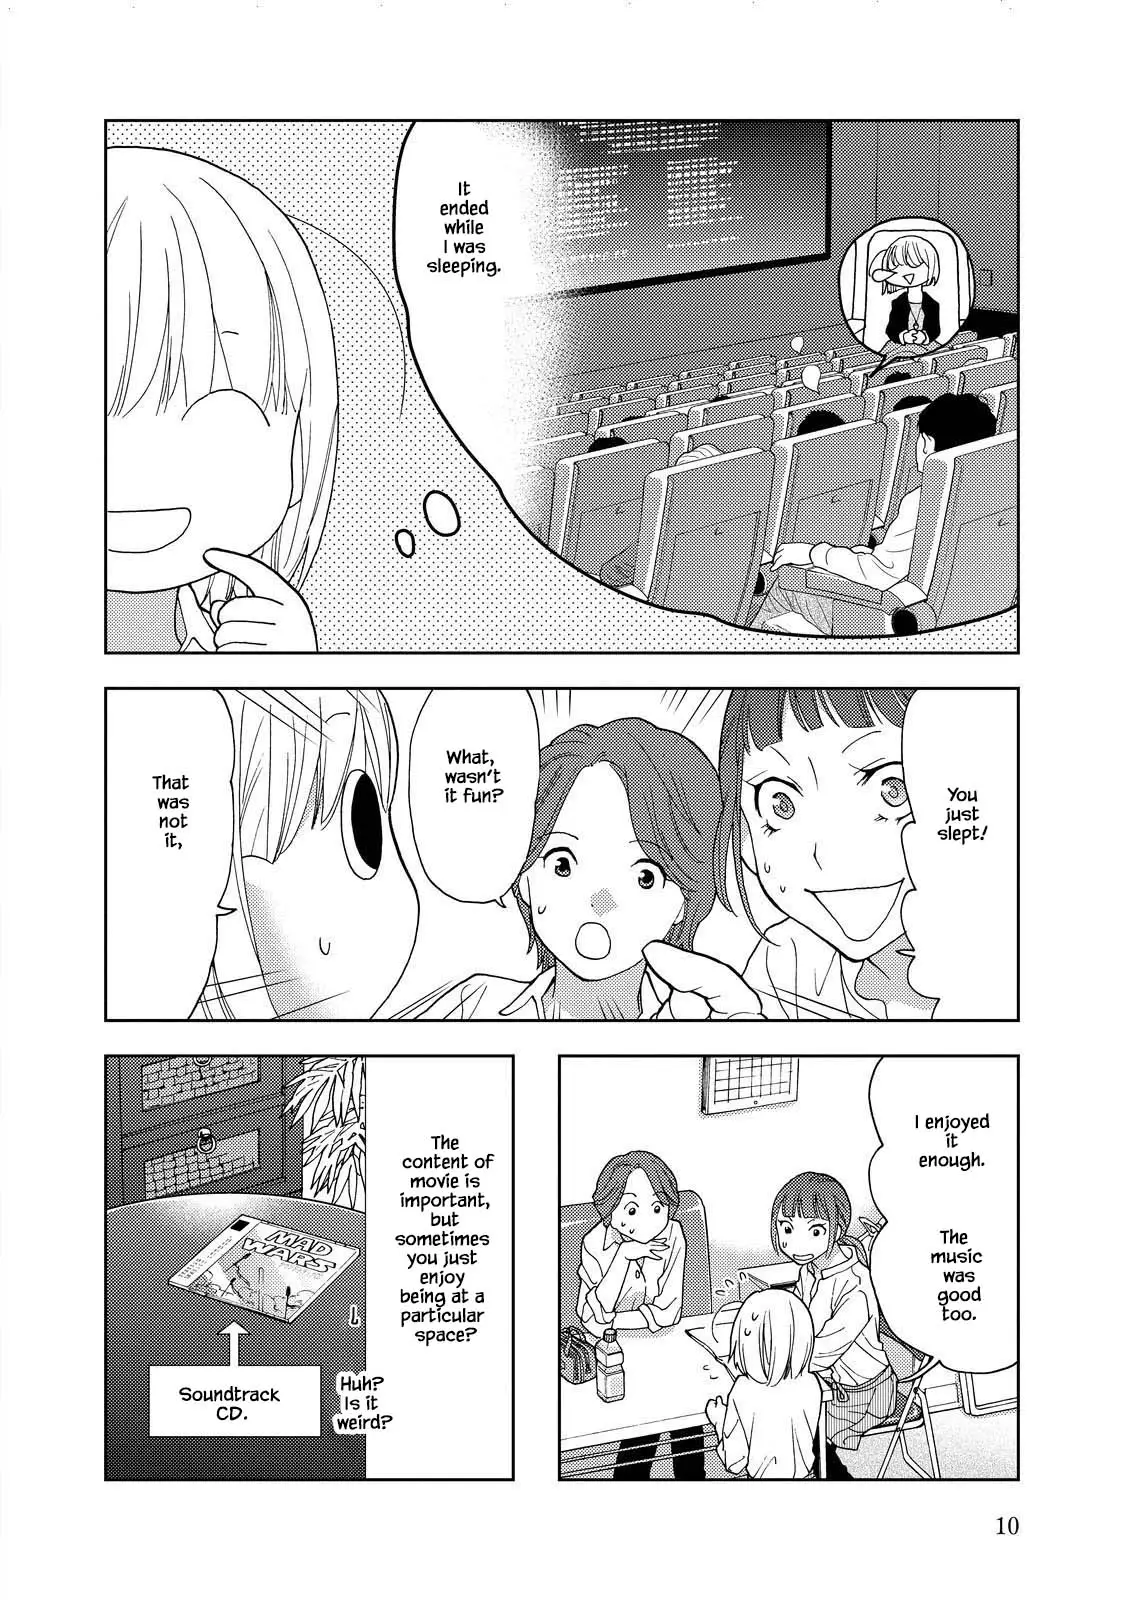 Takako-San - 14 page 13-72459995